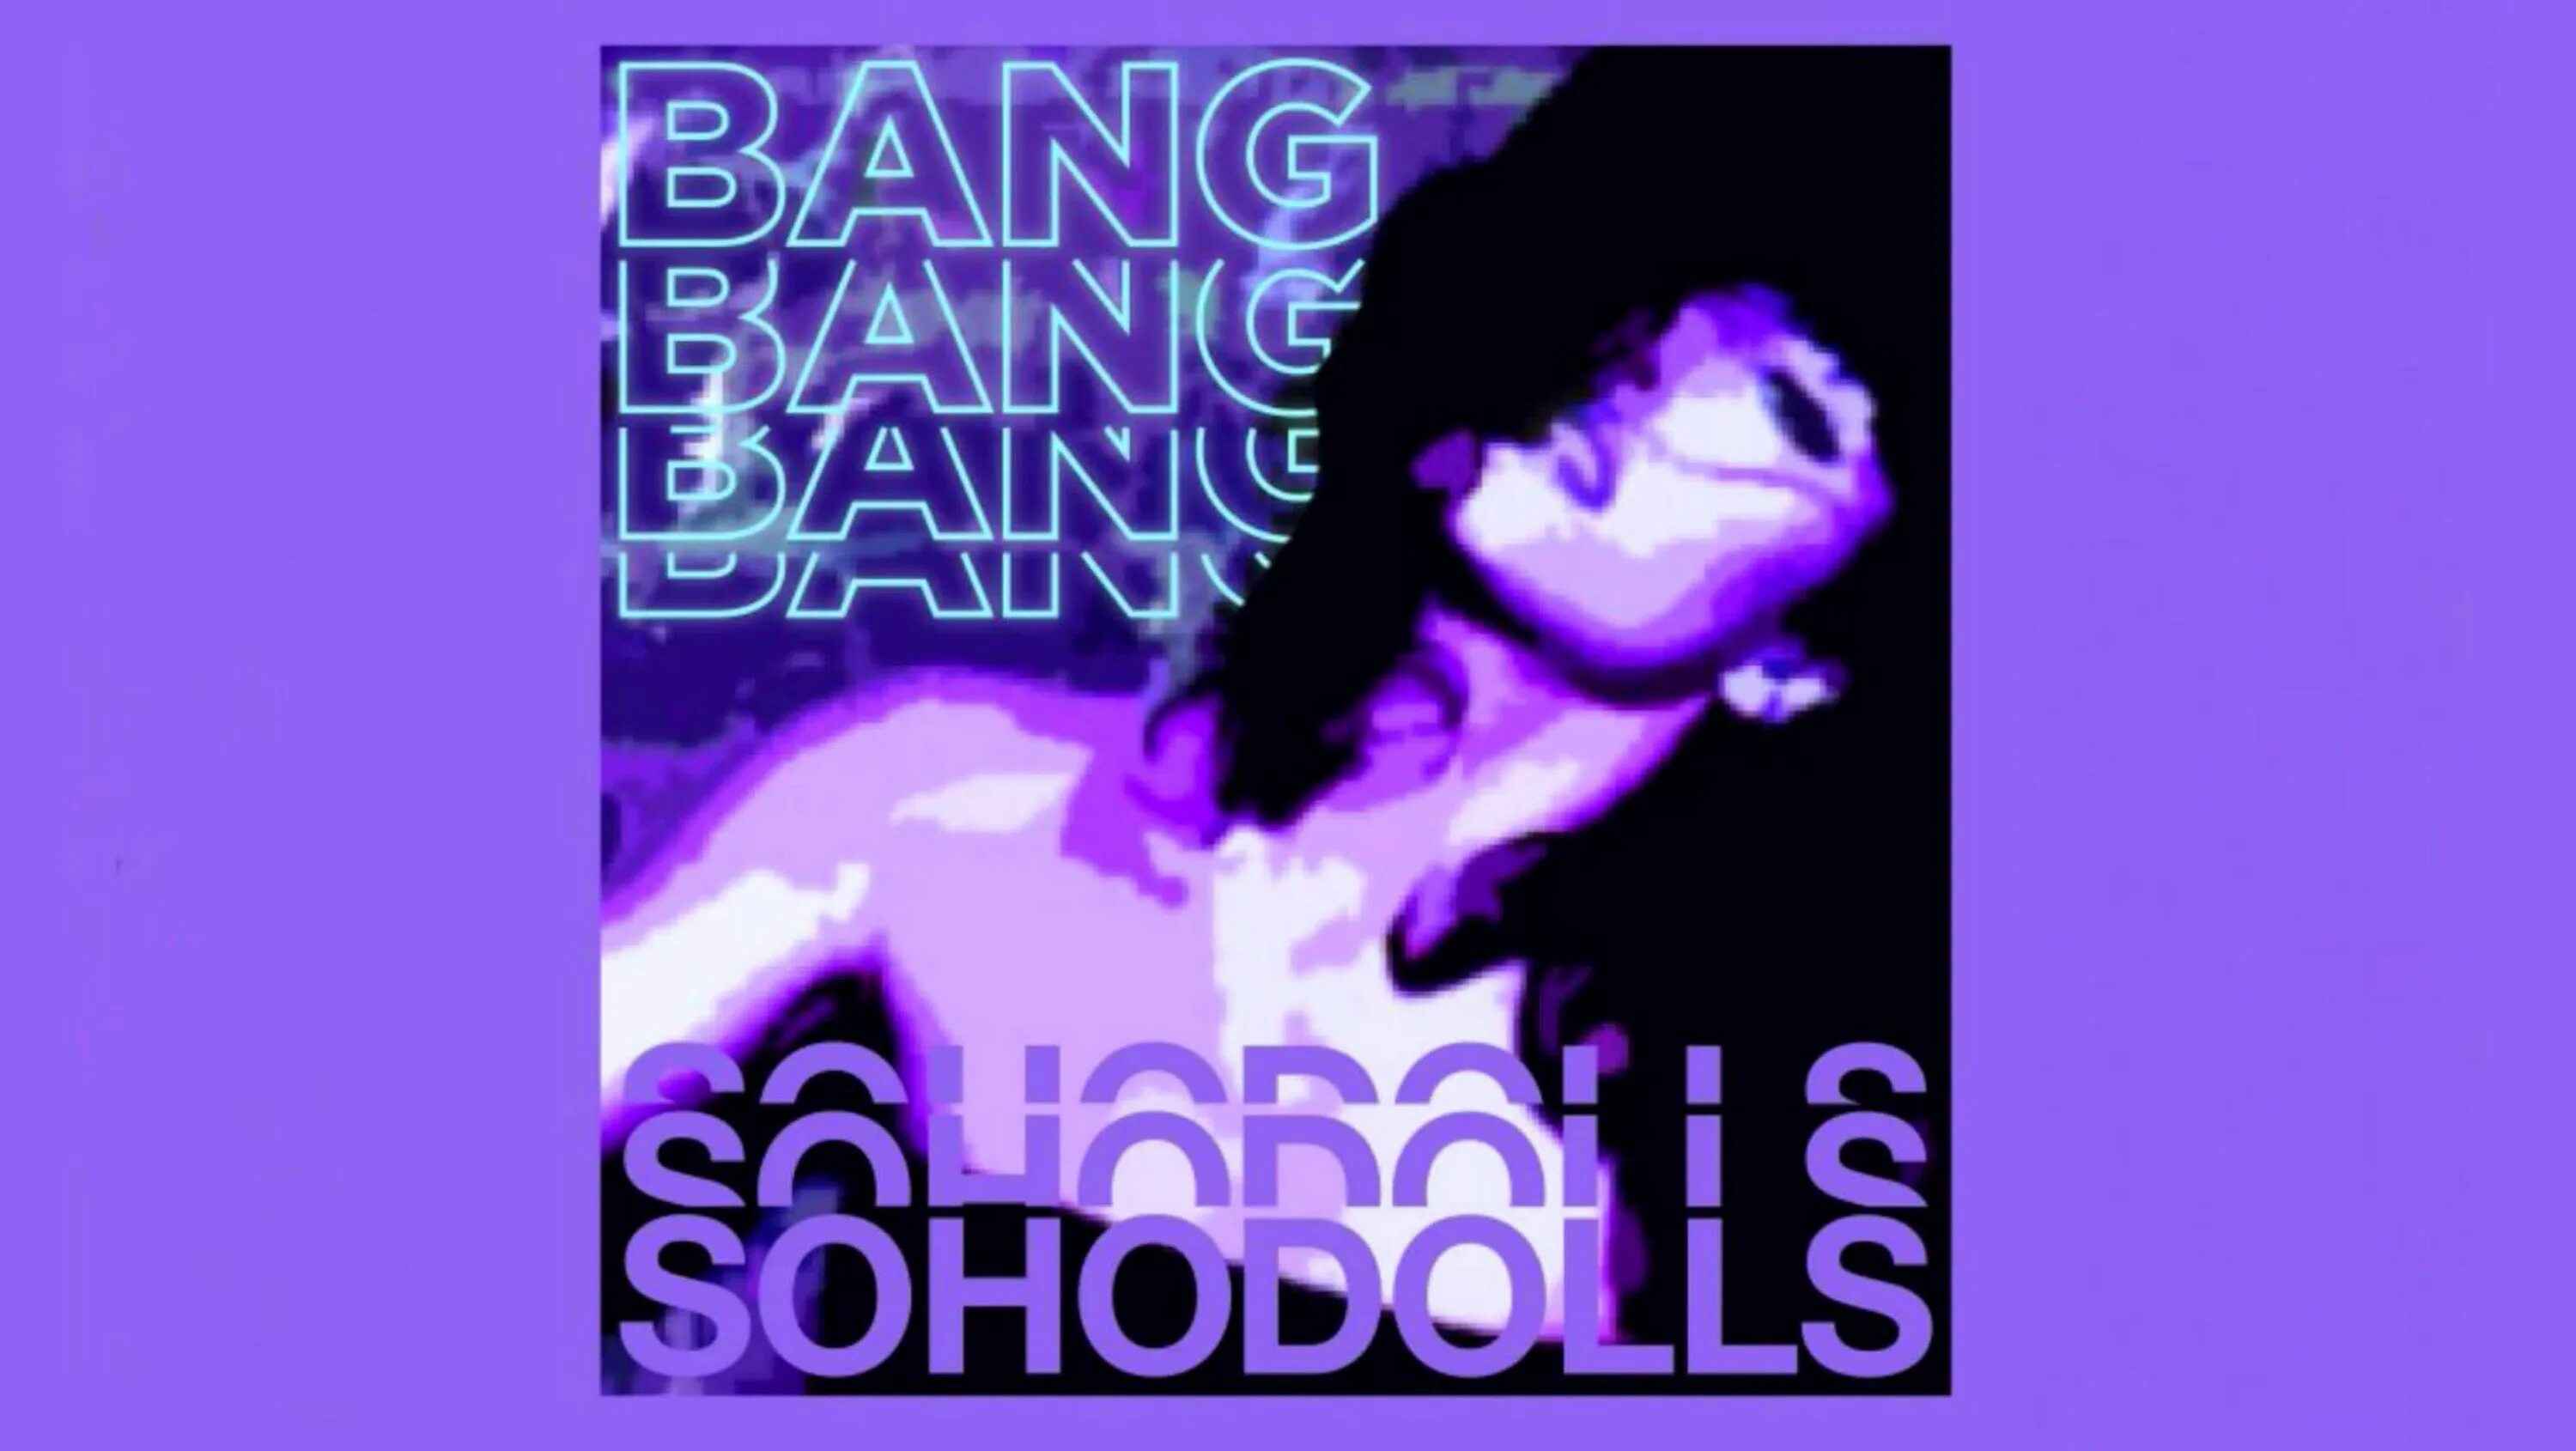 Bang bang money. Bang Bang Bang Sohodolls обложка. Песня Bang Bang Bang. Bang Bang Bang Bang Sohodolls песни. Песня Bang Bang Speed up.